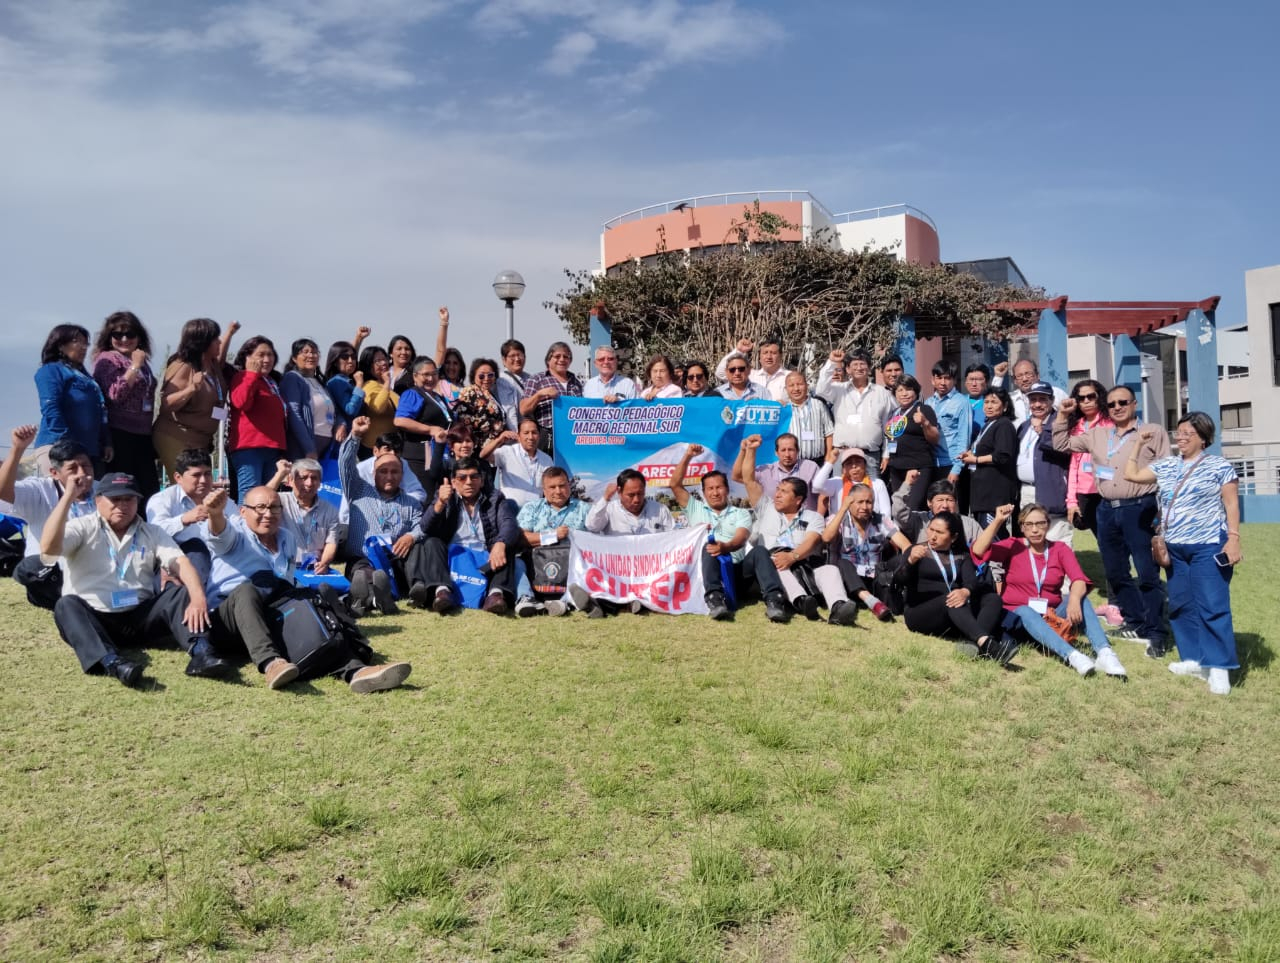 Perú: SUTEP organiza congresos regionales para fortalecer su propuesta pedagógica alternativa